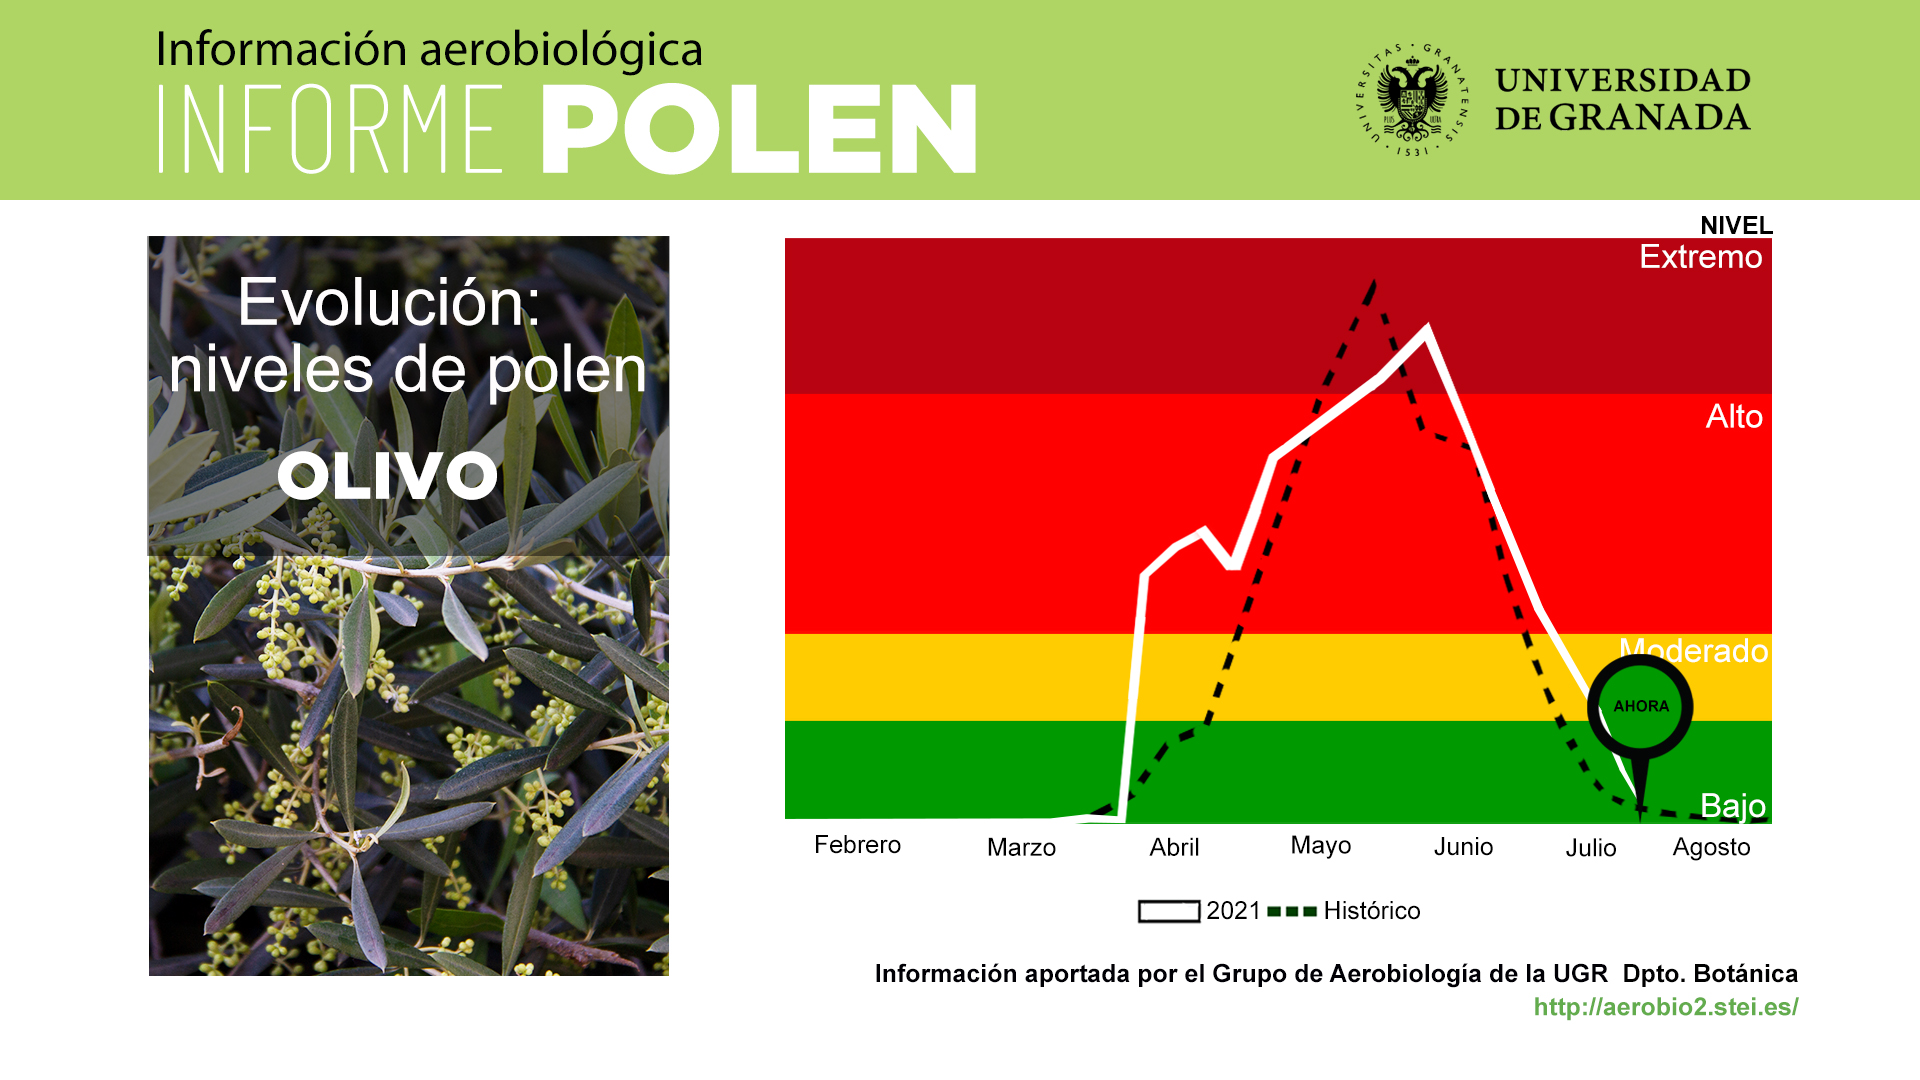 Agosto será un mes con bajo nivel de polen en la atmósfera de Granada